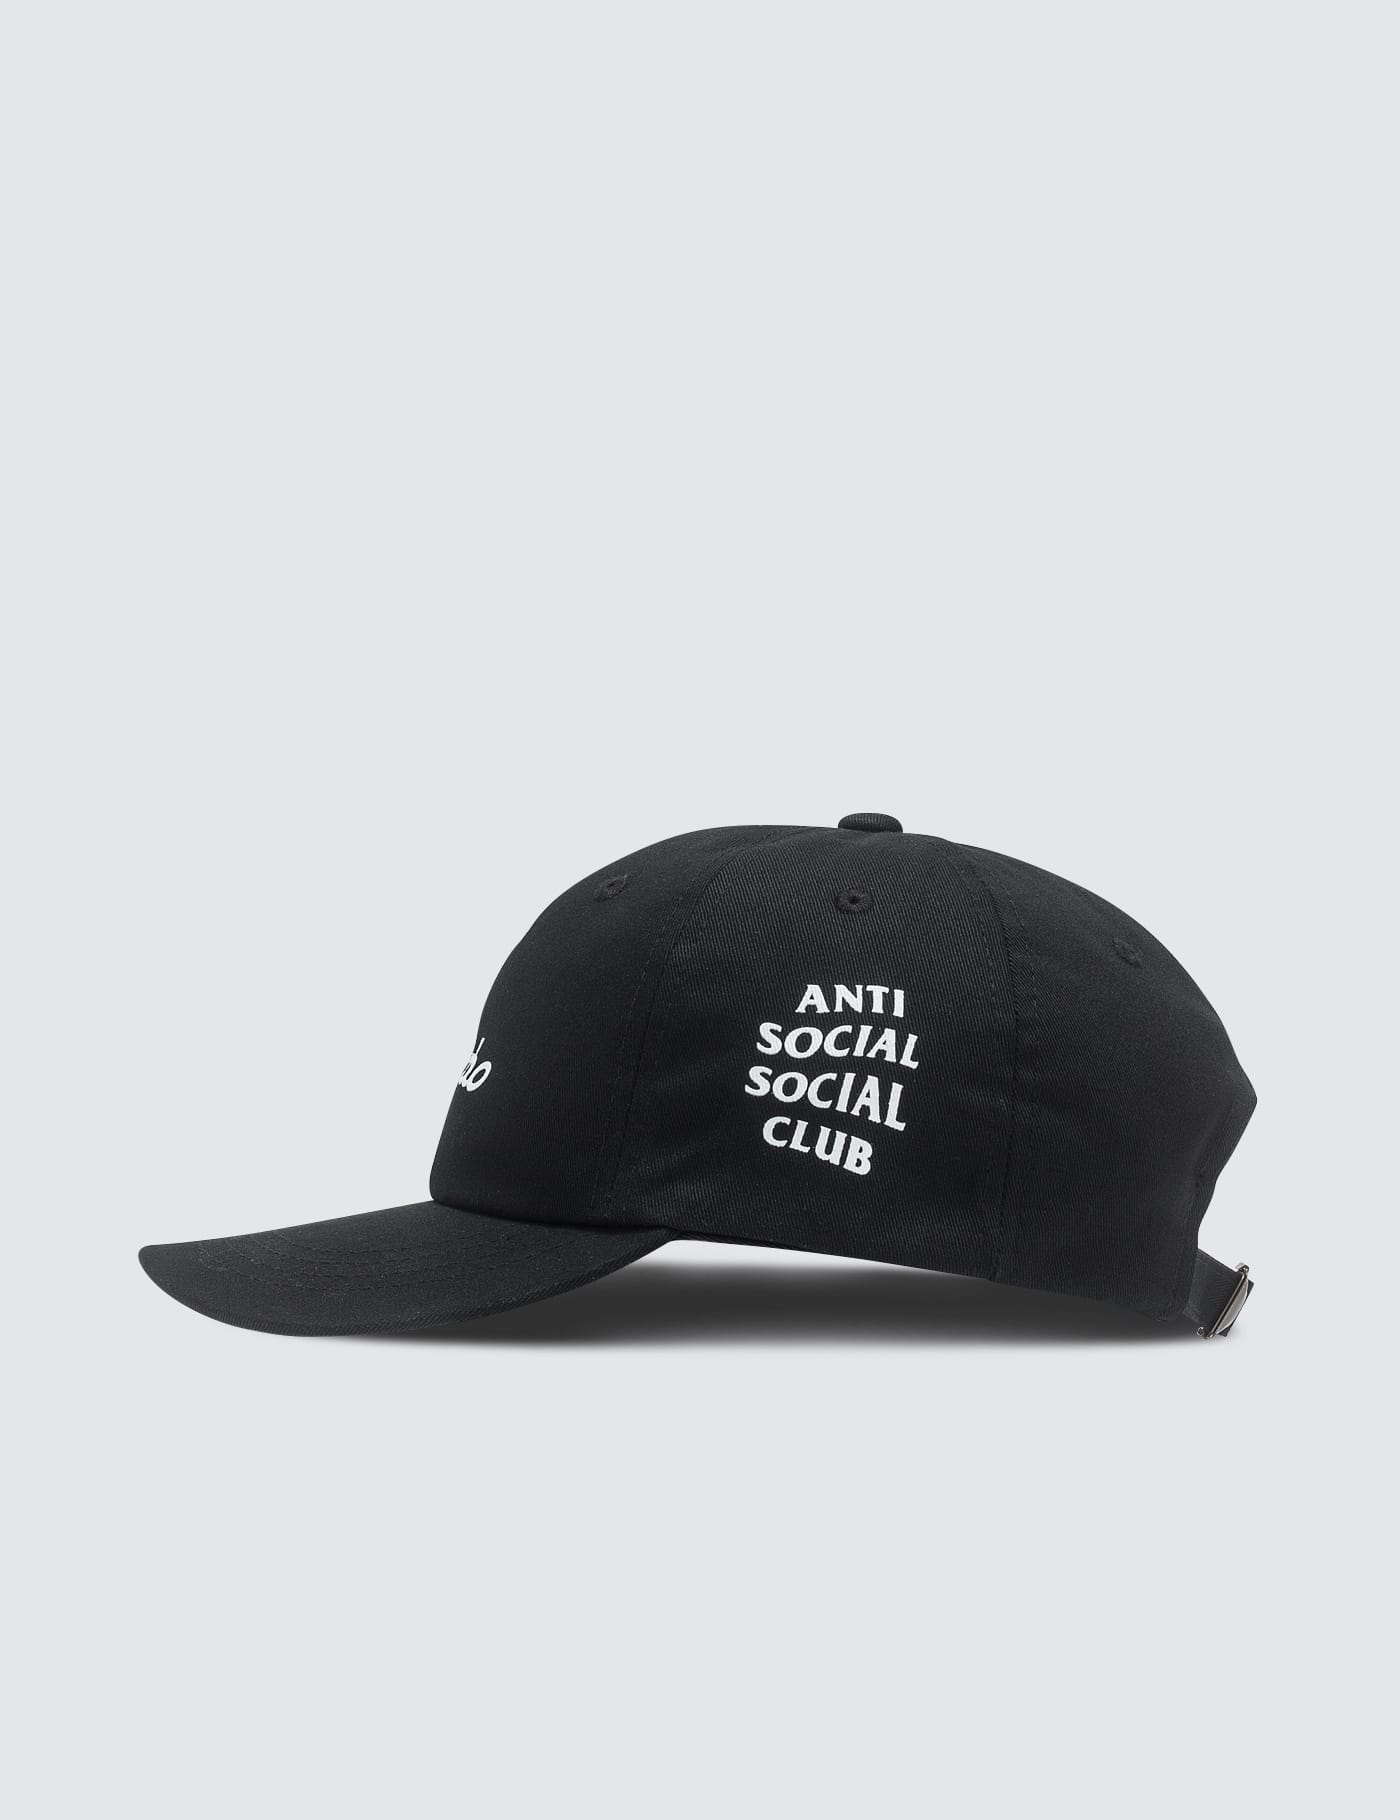 Anti Social Social Club x Neighborhood - Anti Social Social Club x